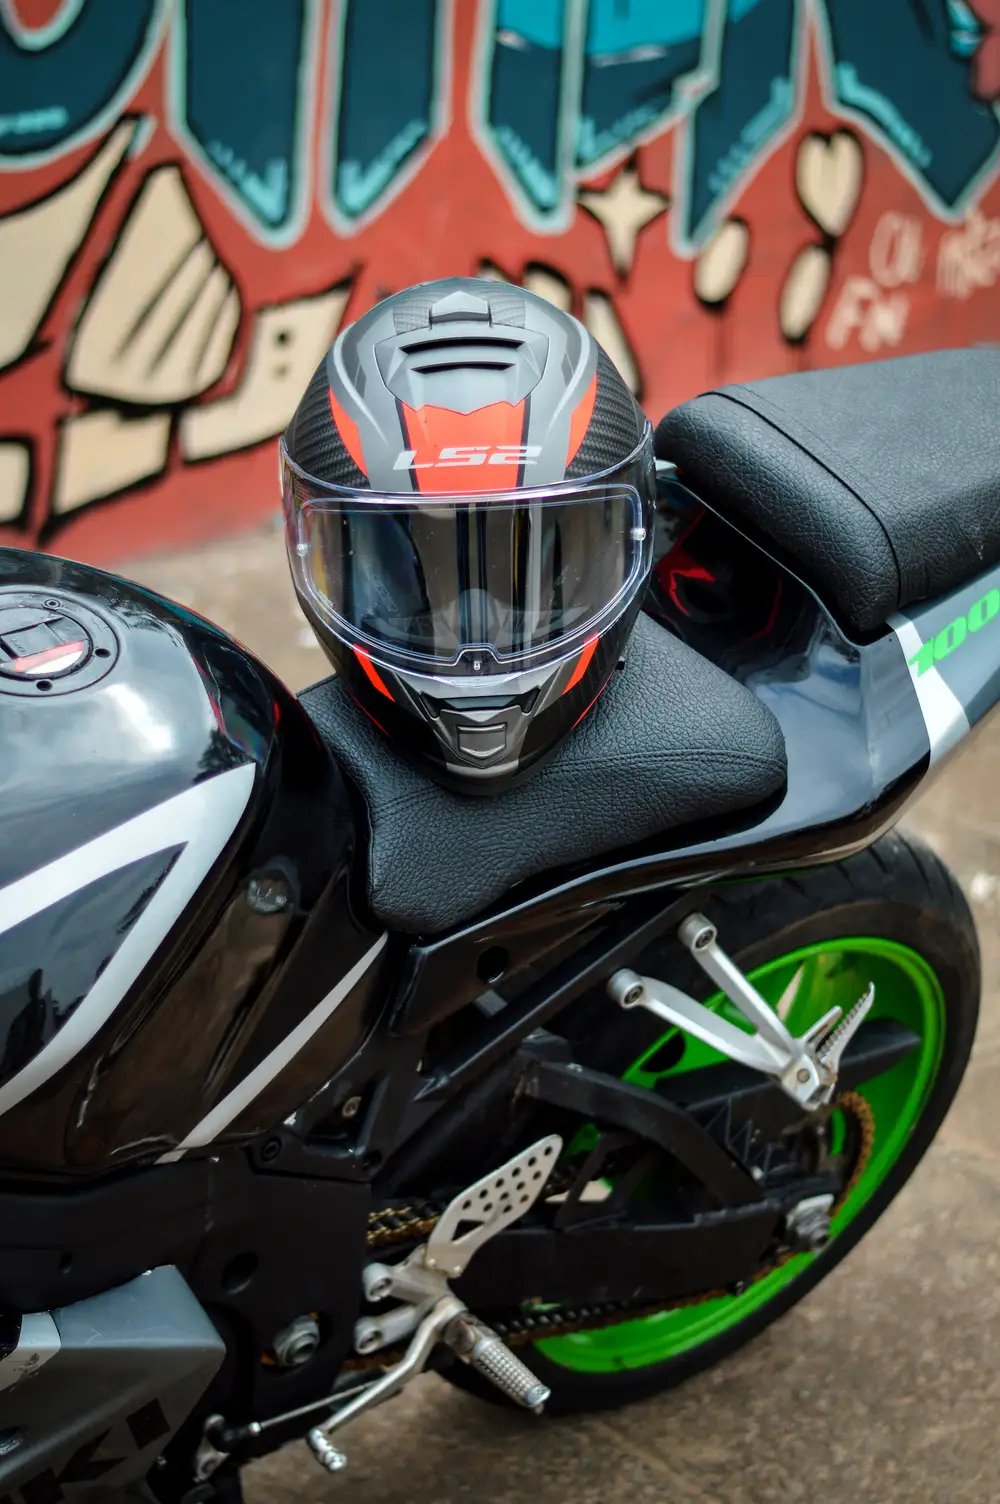 Black power bike with helmet